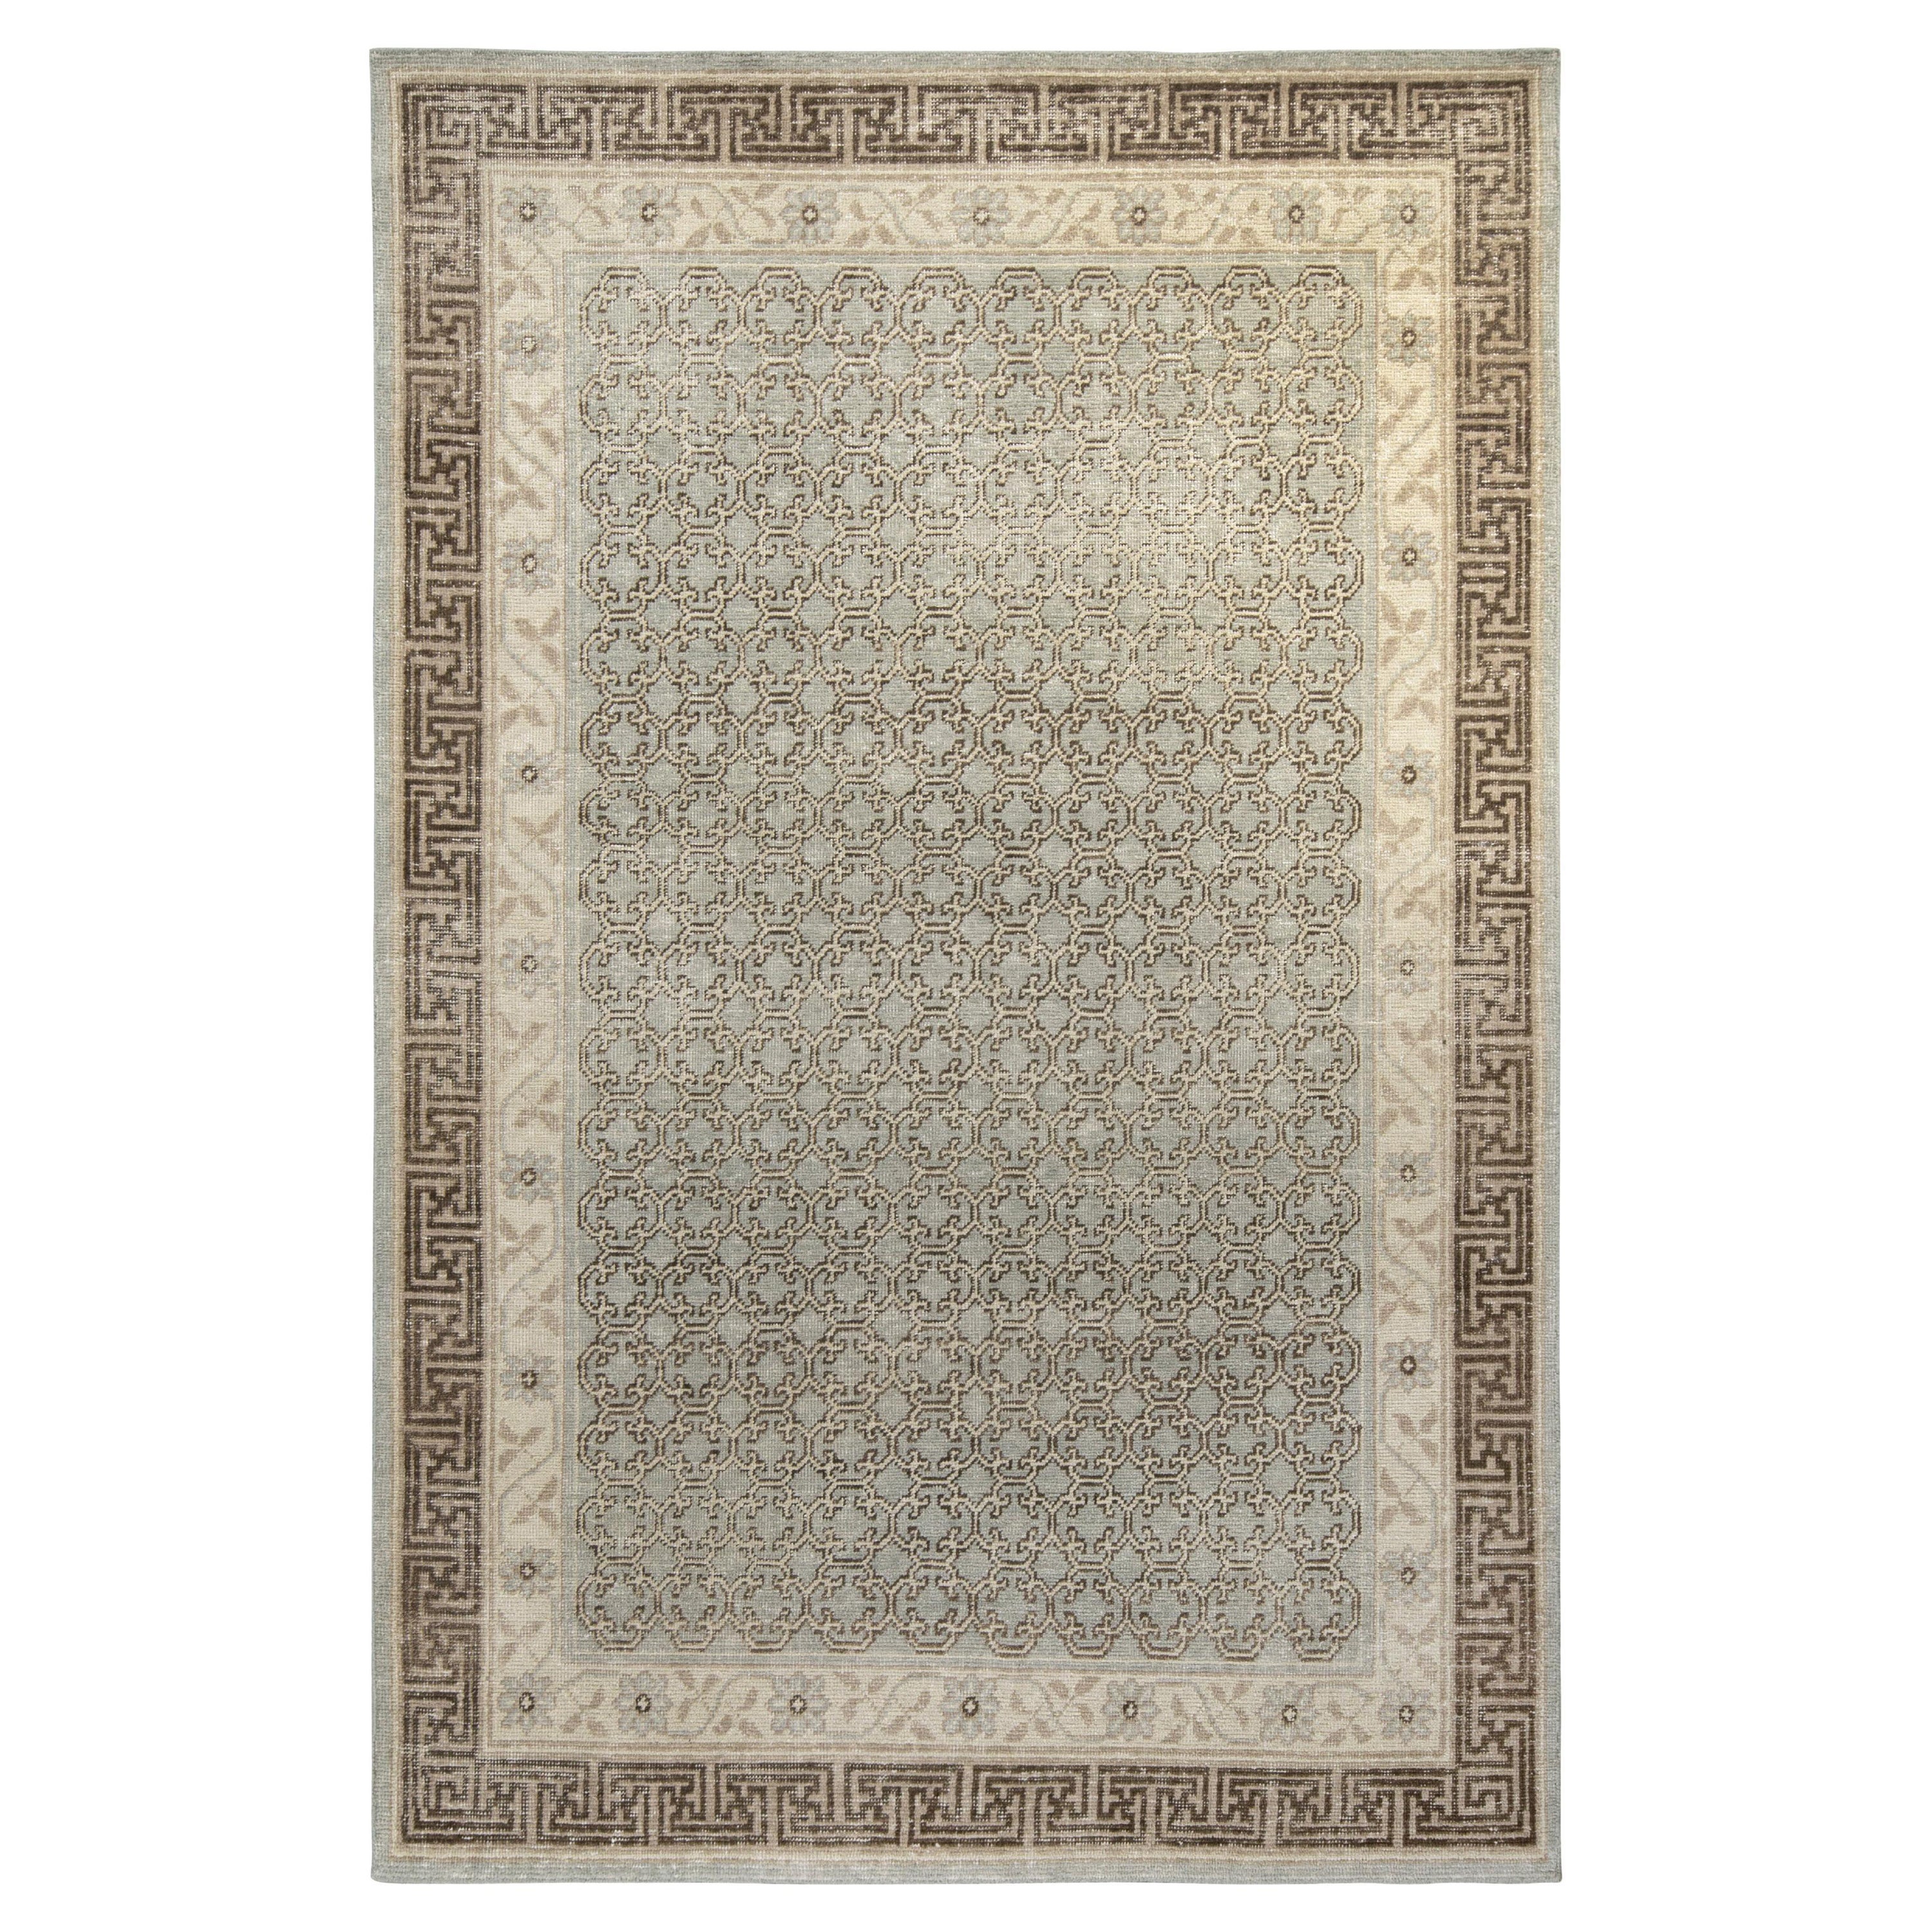 Teppich & Kilims Distressed Style, maßgefertigter Teppich in Braun, Grau mit geometrischem Muster